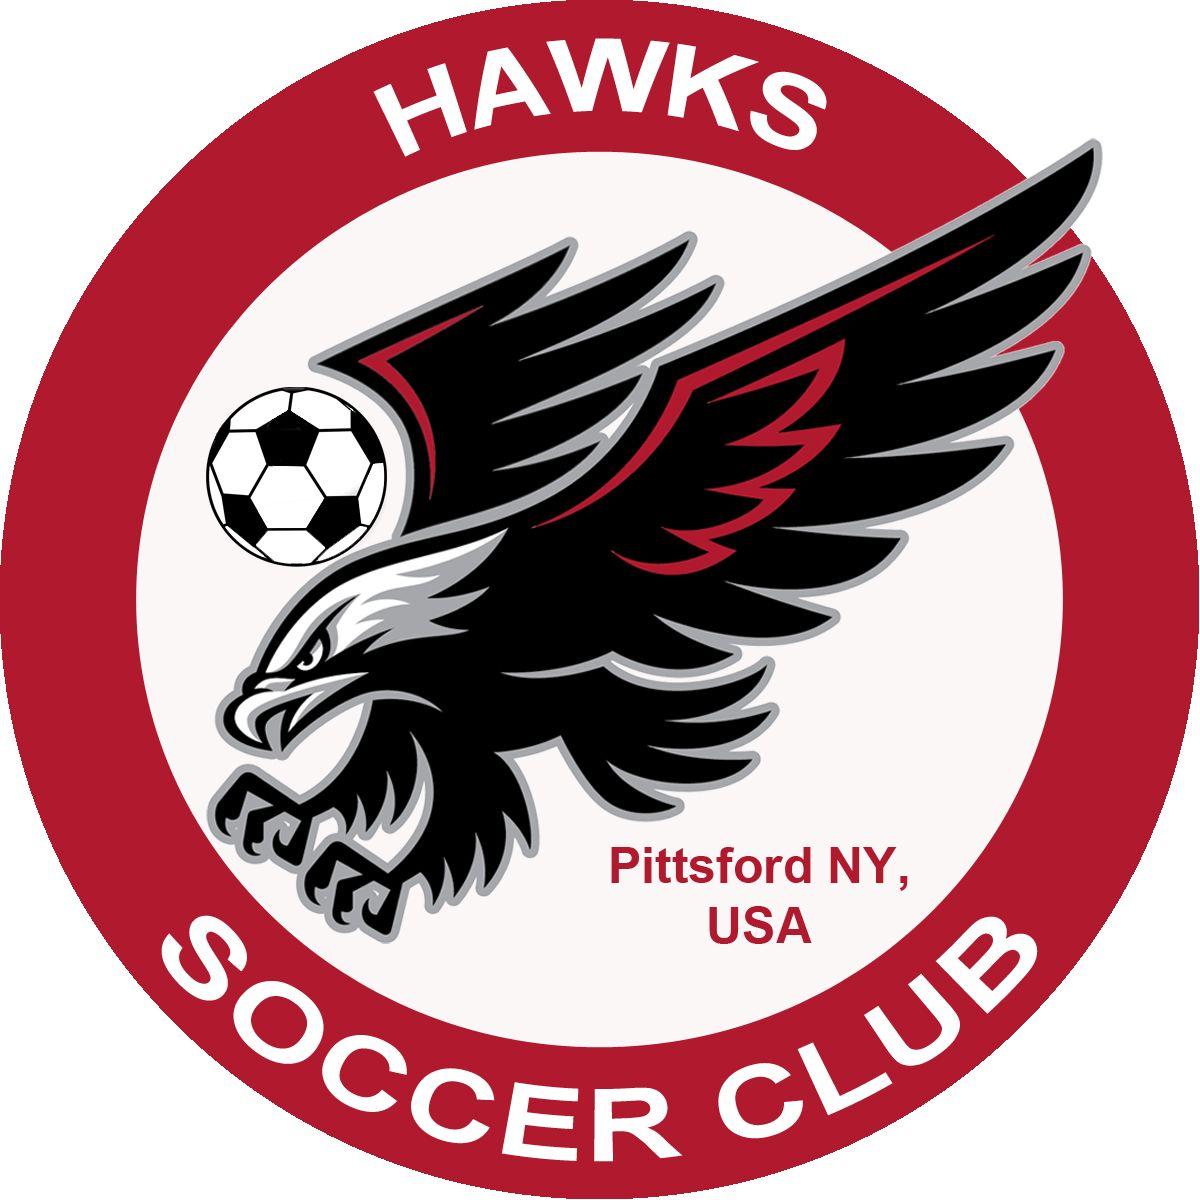 Hawks Soccer Logo - About Hawks Soccer Club